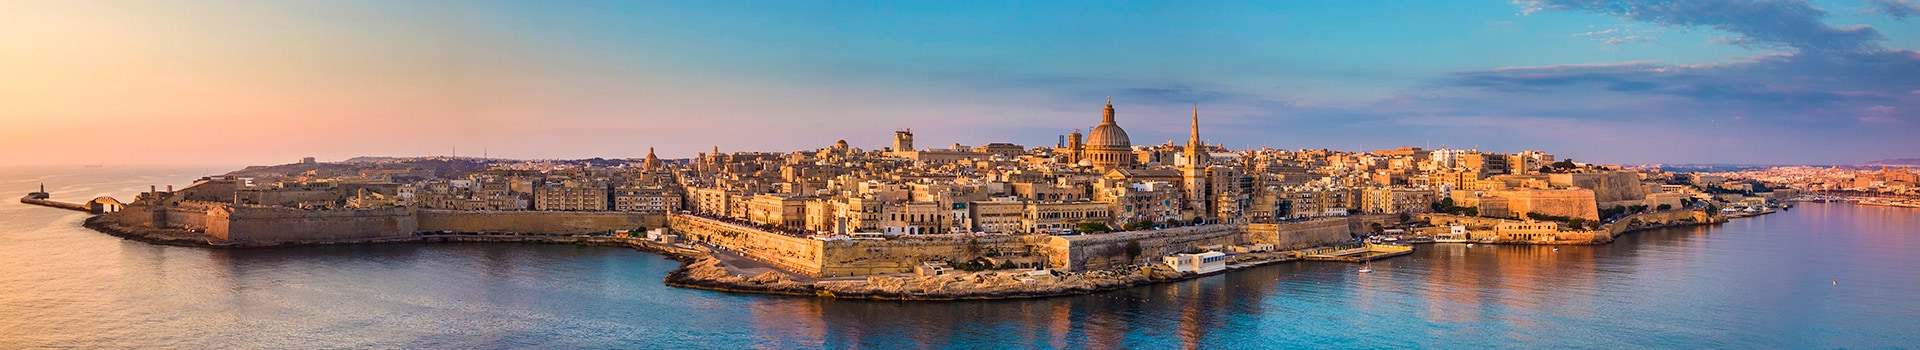 Napoli - Malta